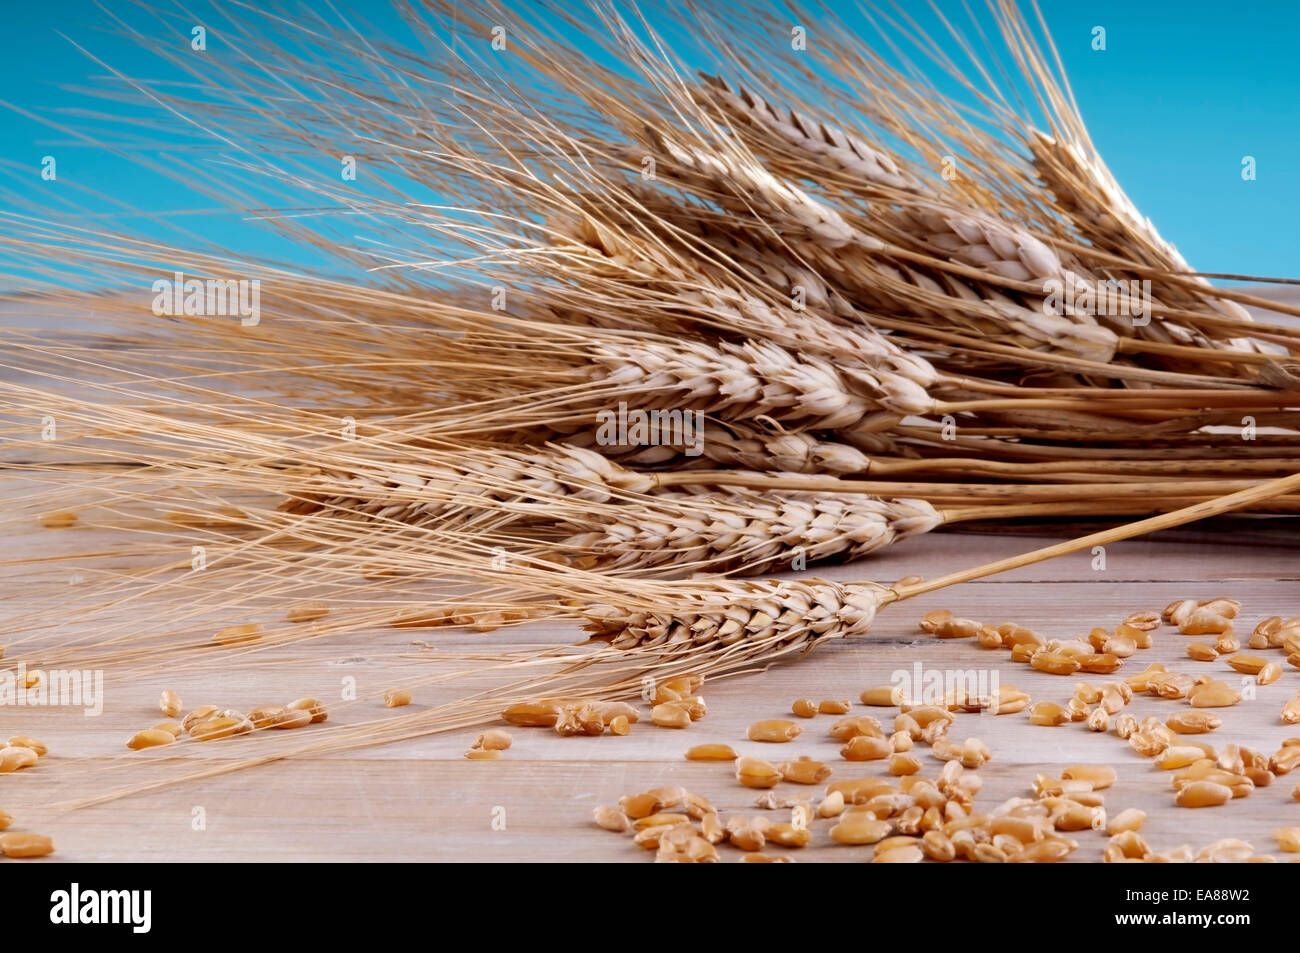 Espigas de trigo, trigo seco. foto de Stock